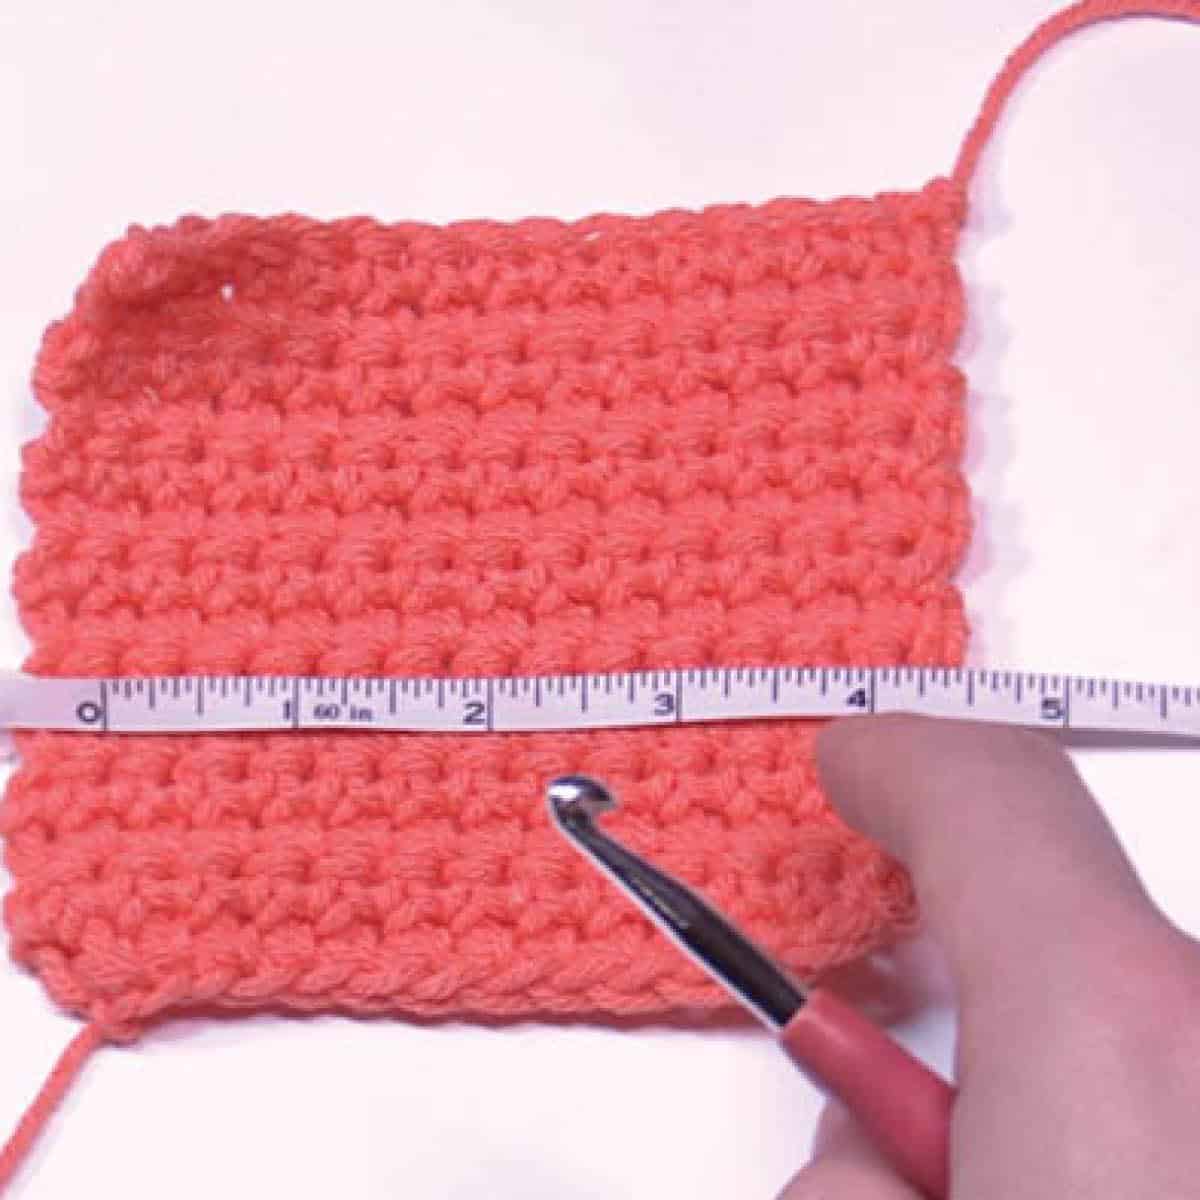 Crochet Yarn Gauges for Yarn Substituting